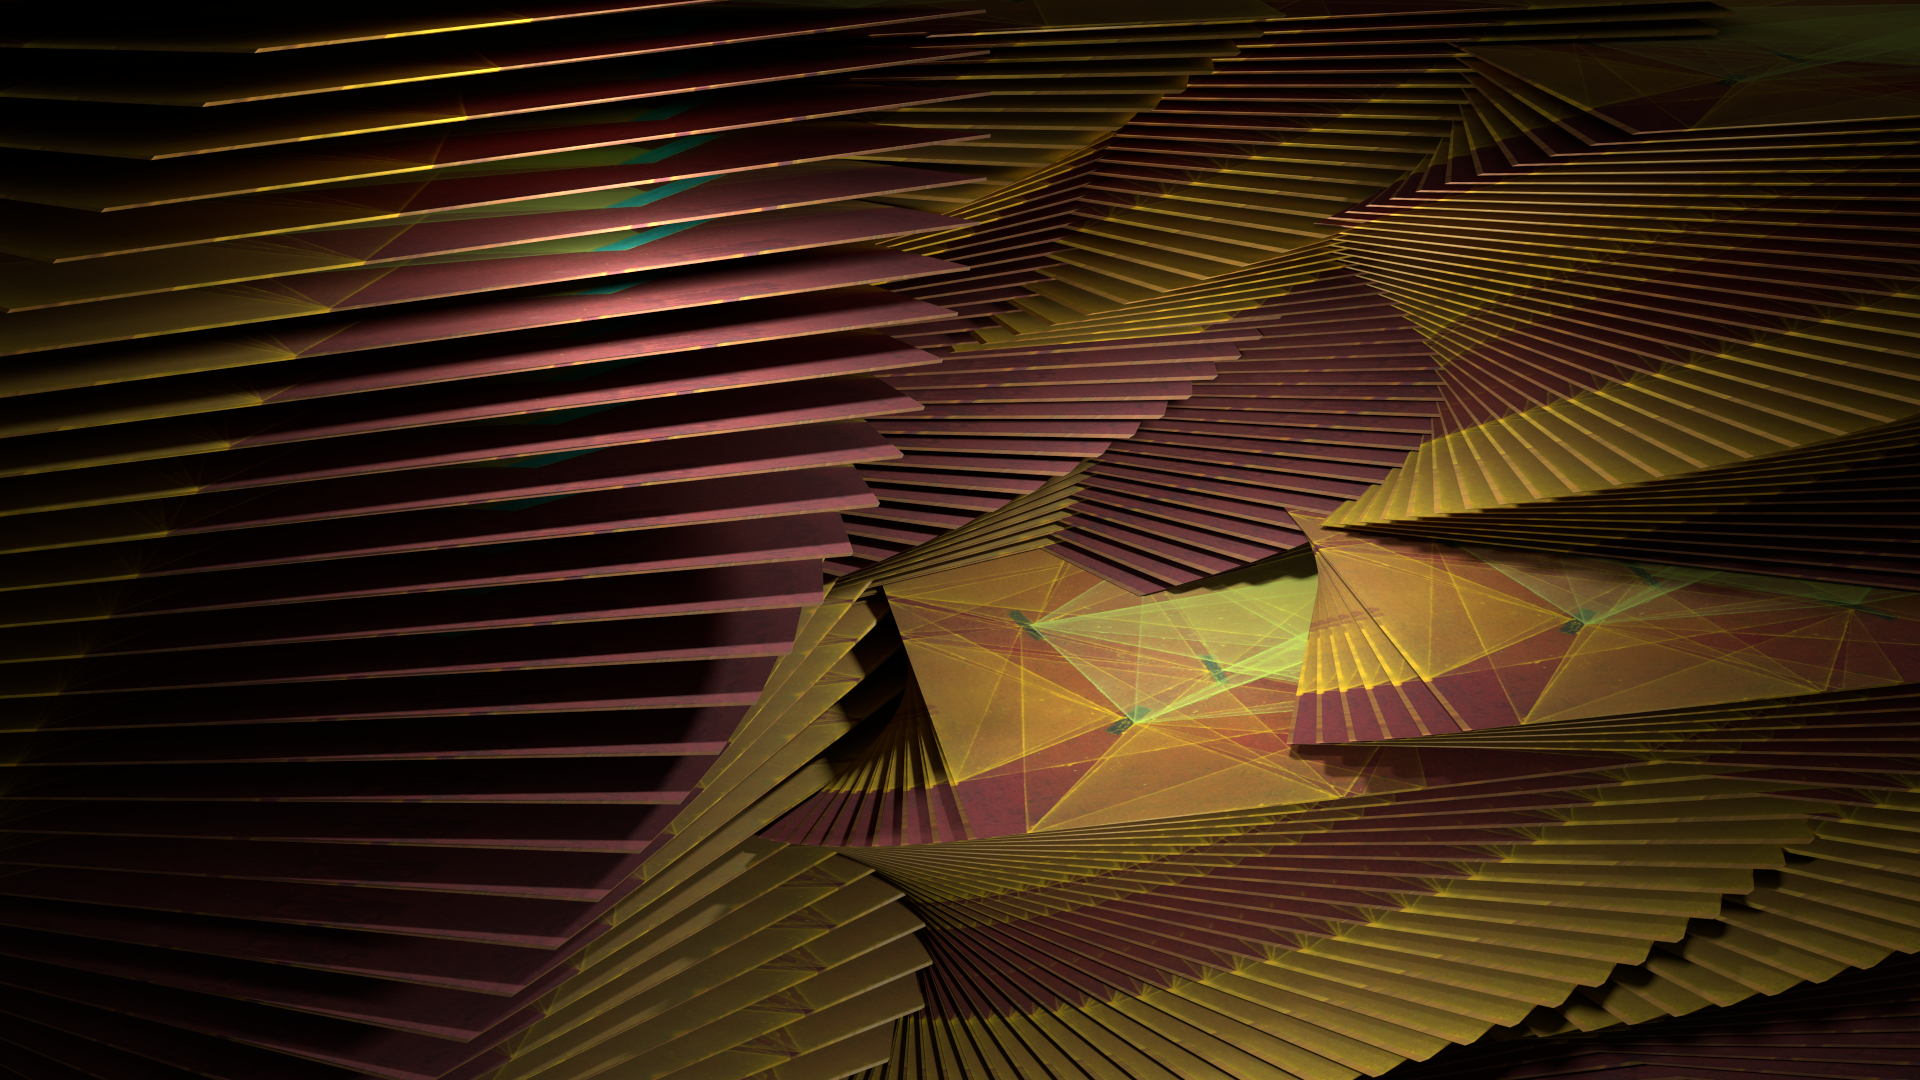  Elevation no.5, digital image rendered with 3D modeling software, 2015 